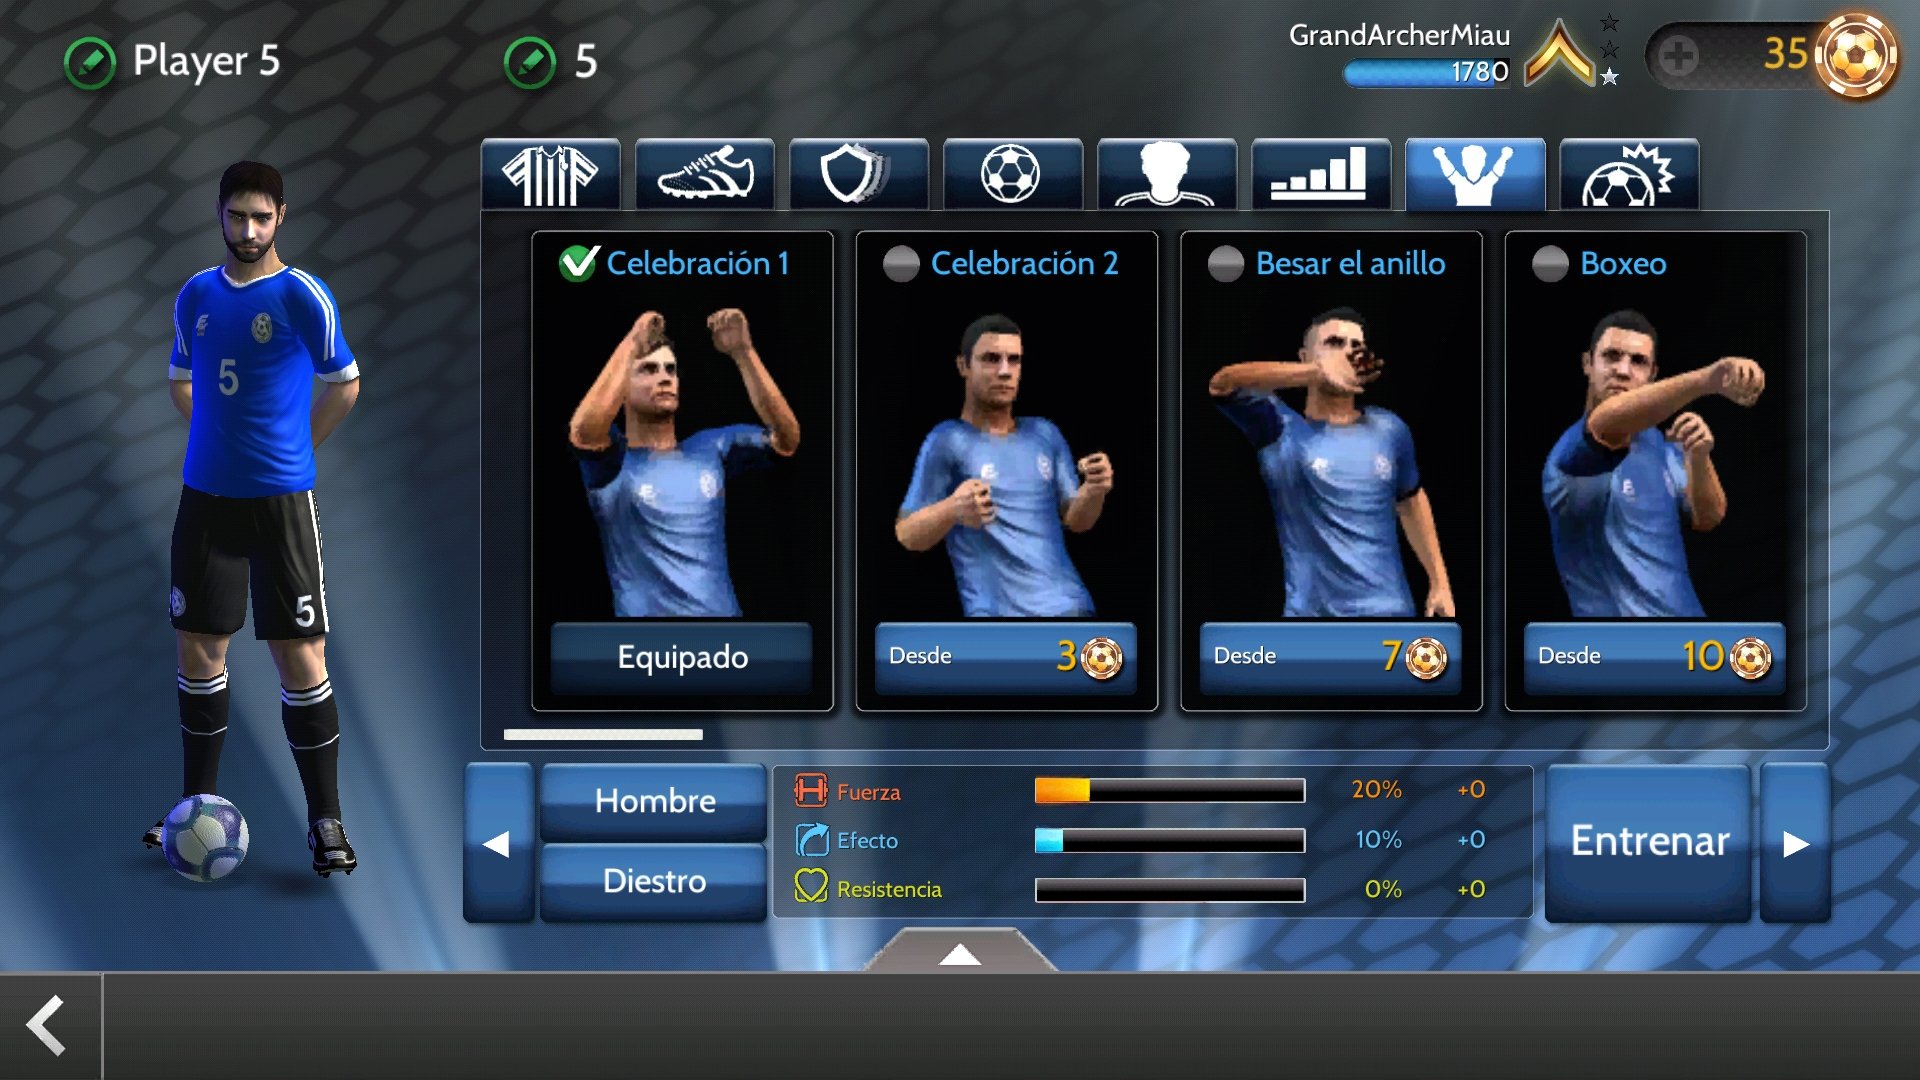 Download do APK de Multicanais futebol direto para Android